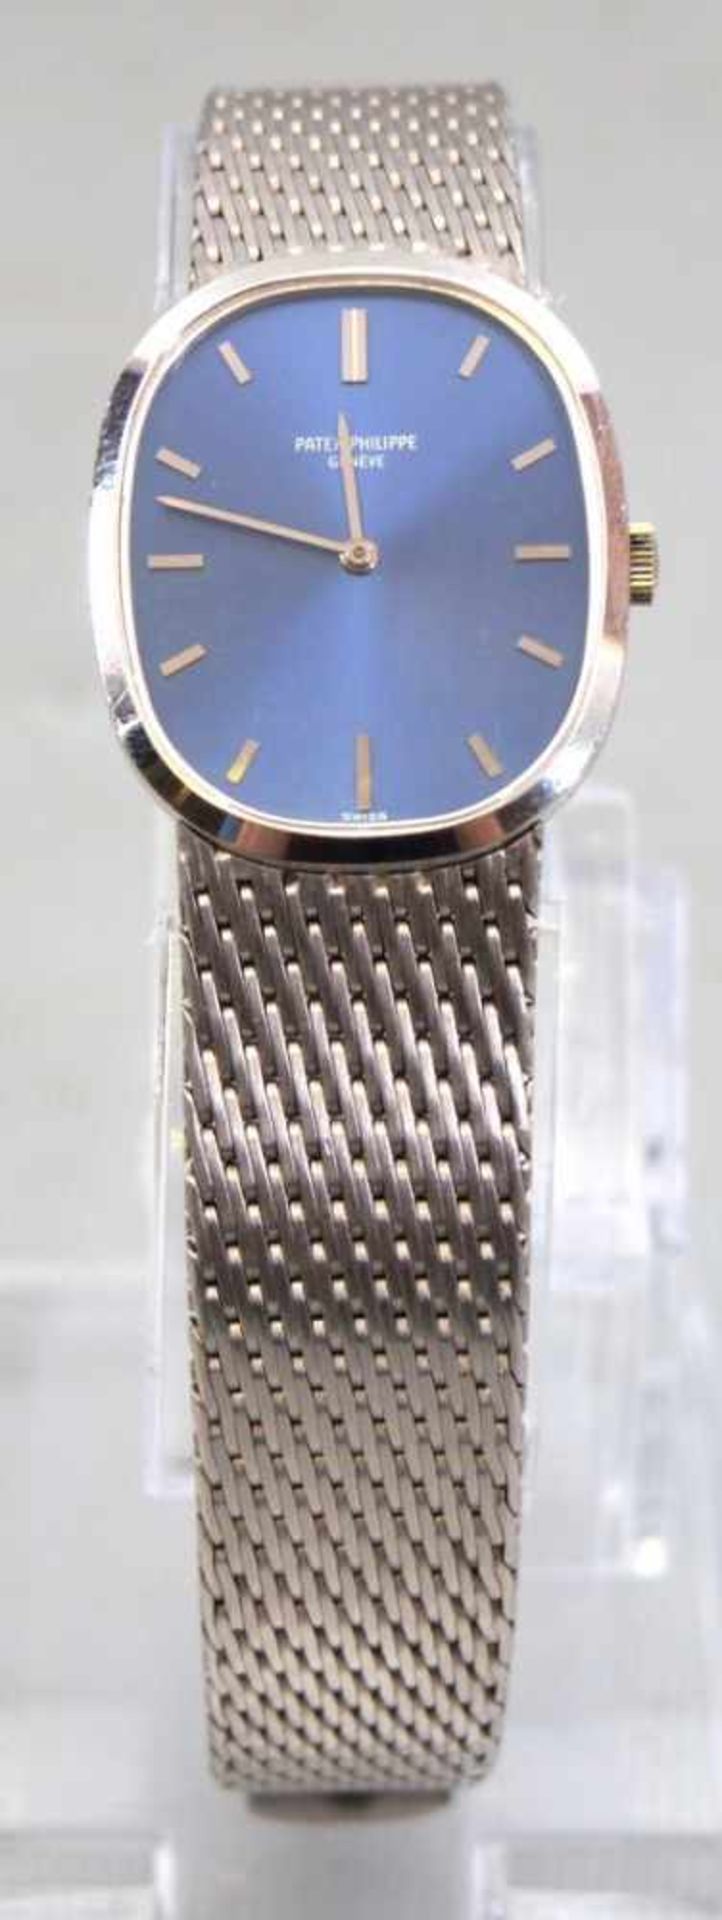 Armbanduhr "Ellipse" Patek Philippe 18 kt. Weißgold, Unisex, Handaufzug, Vintage, mit originalen